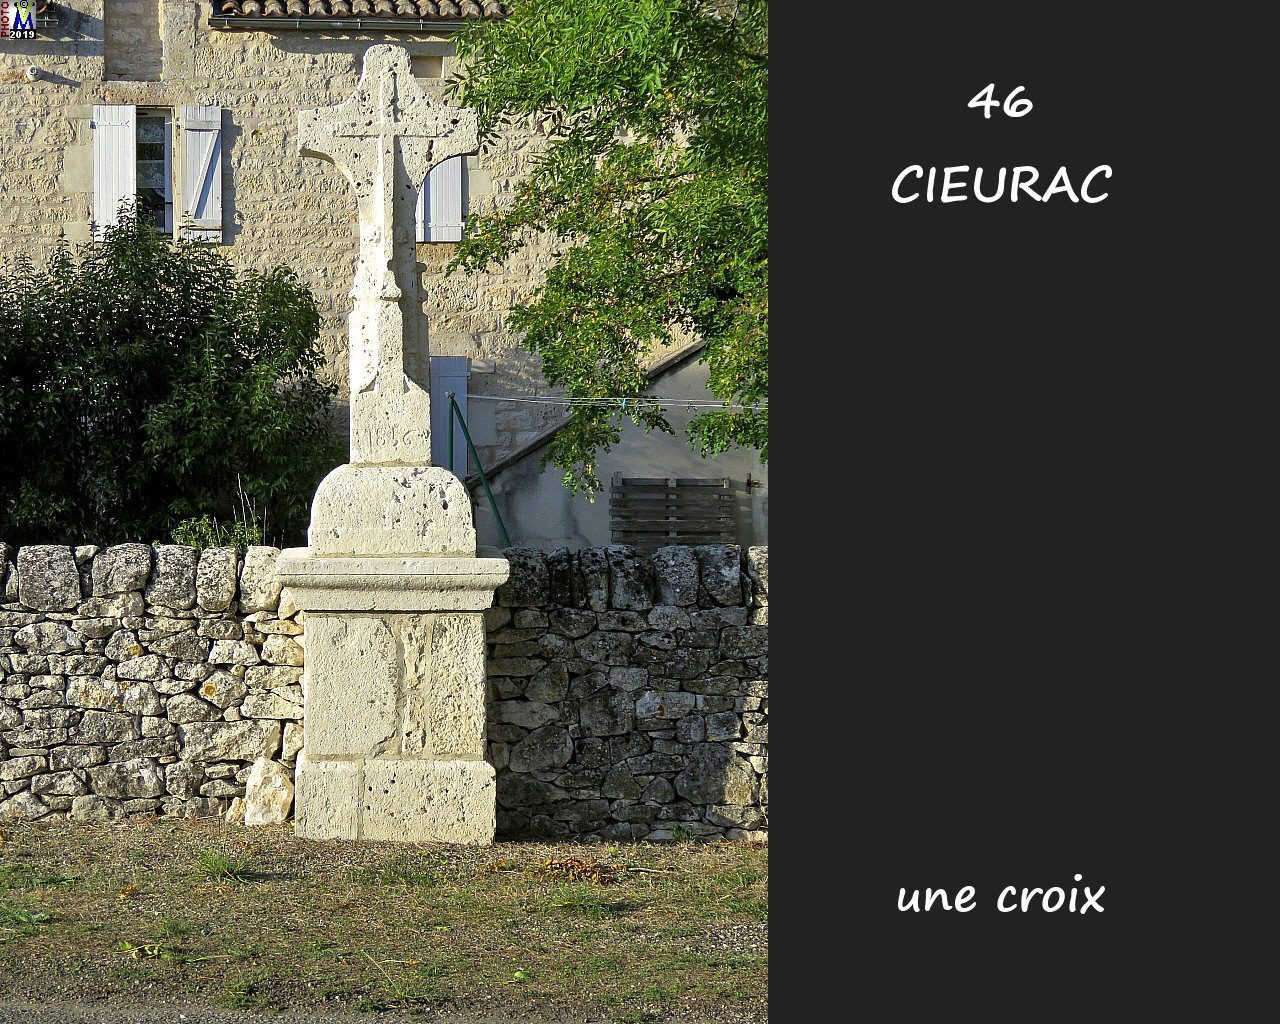 46CIEURAC_croix_104.jpg